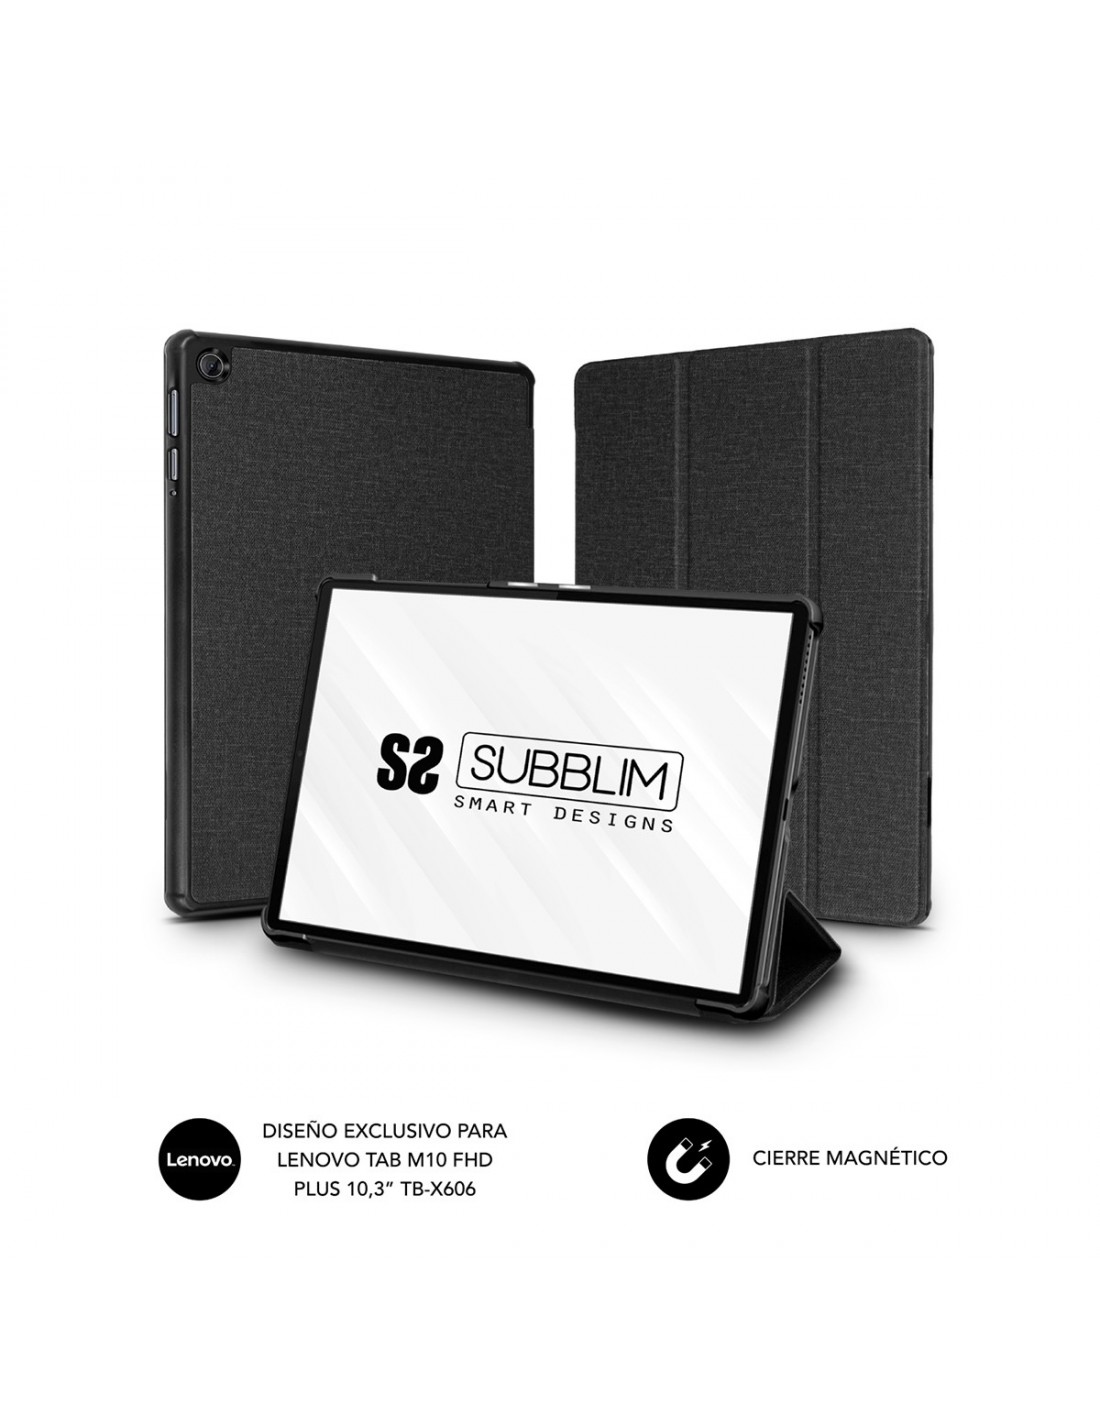 SUBBLIM Funda Tablet Shock Case Lenovo Tab M10 FHD Plus 10.3 TB